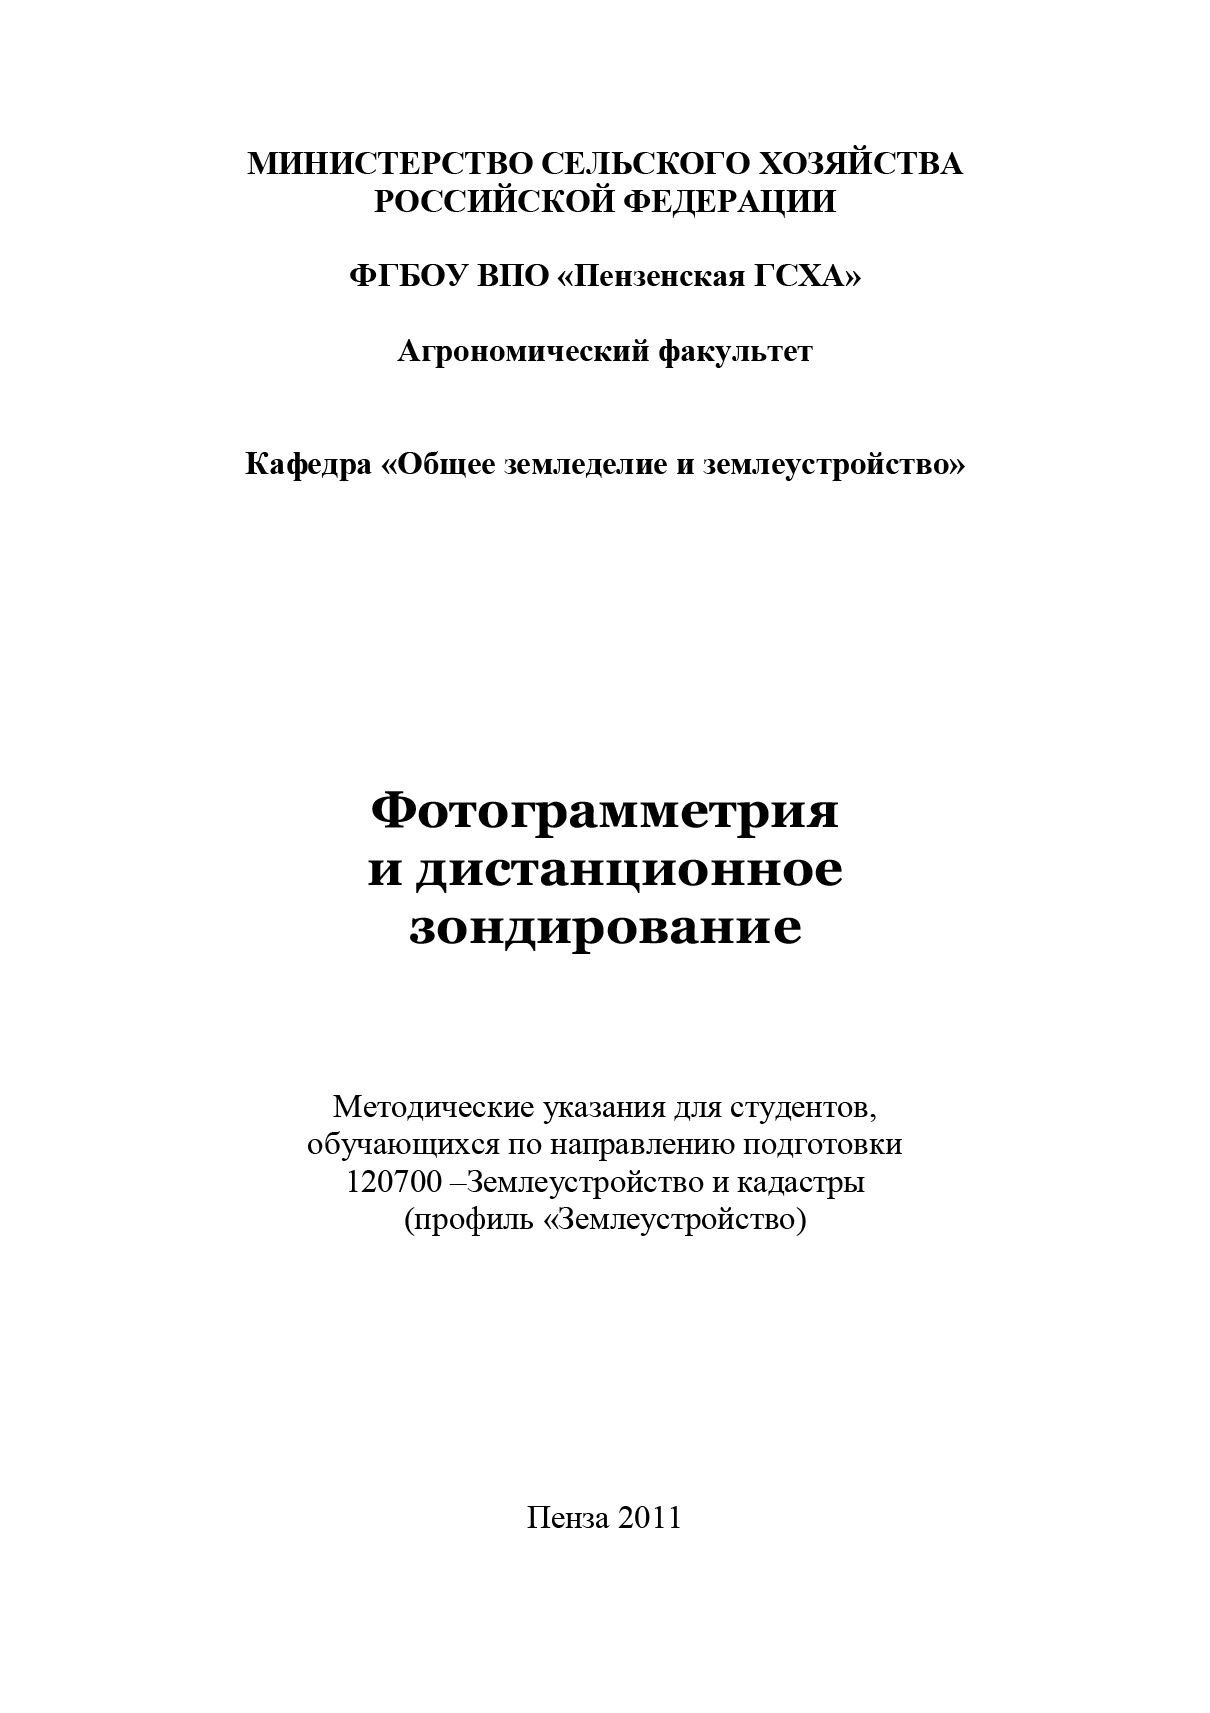 Книга Фотограмметрия и дистанционное зондирование из серии , созданная Сергей Богомазов, может относится к жанру Педагогика. Стоимость книги Фотограмметрия и дистанционное зондирование  с идентификатором 16935608 составляет 320.00 руб.